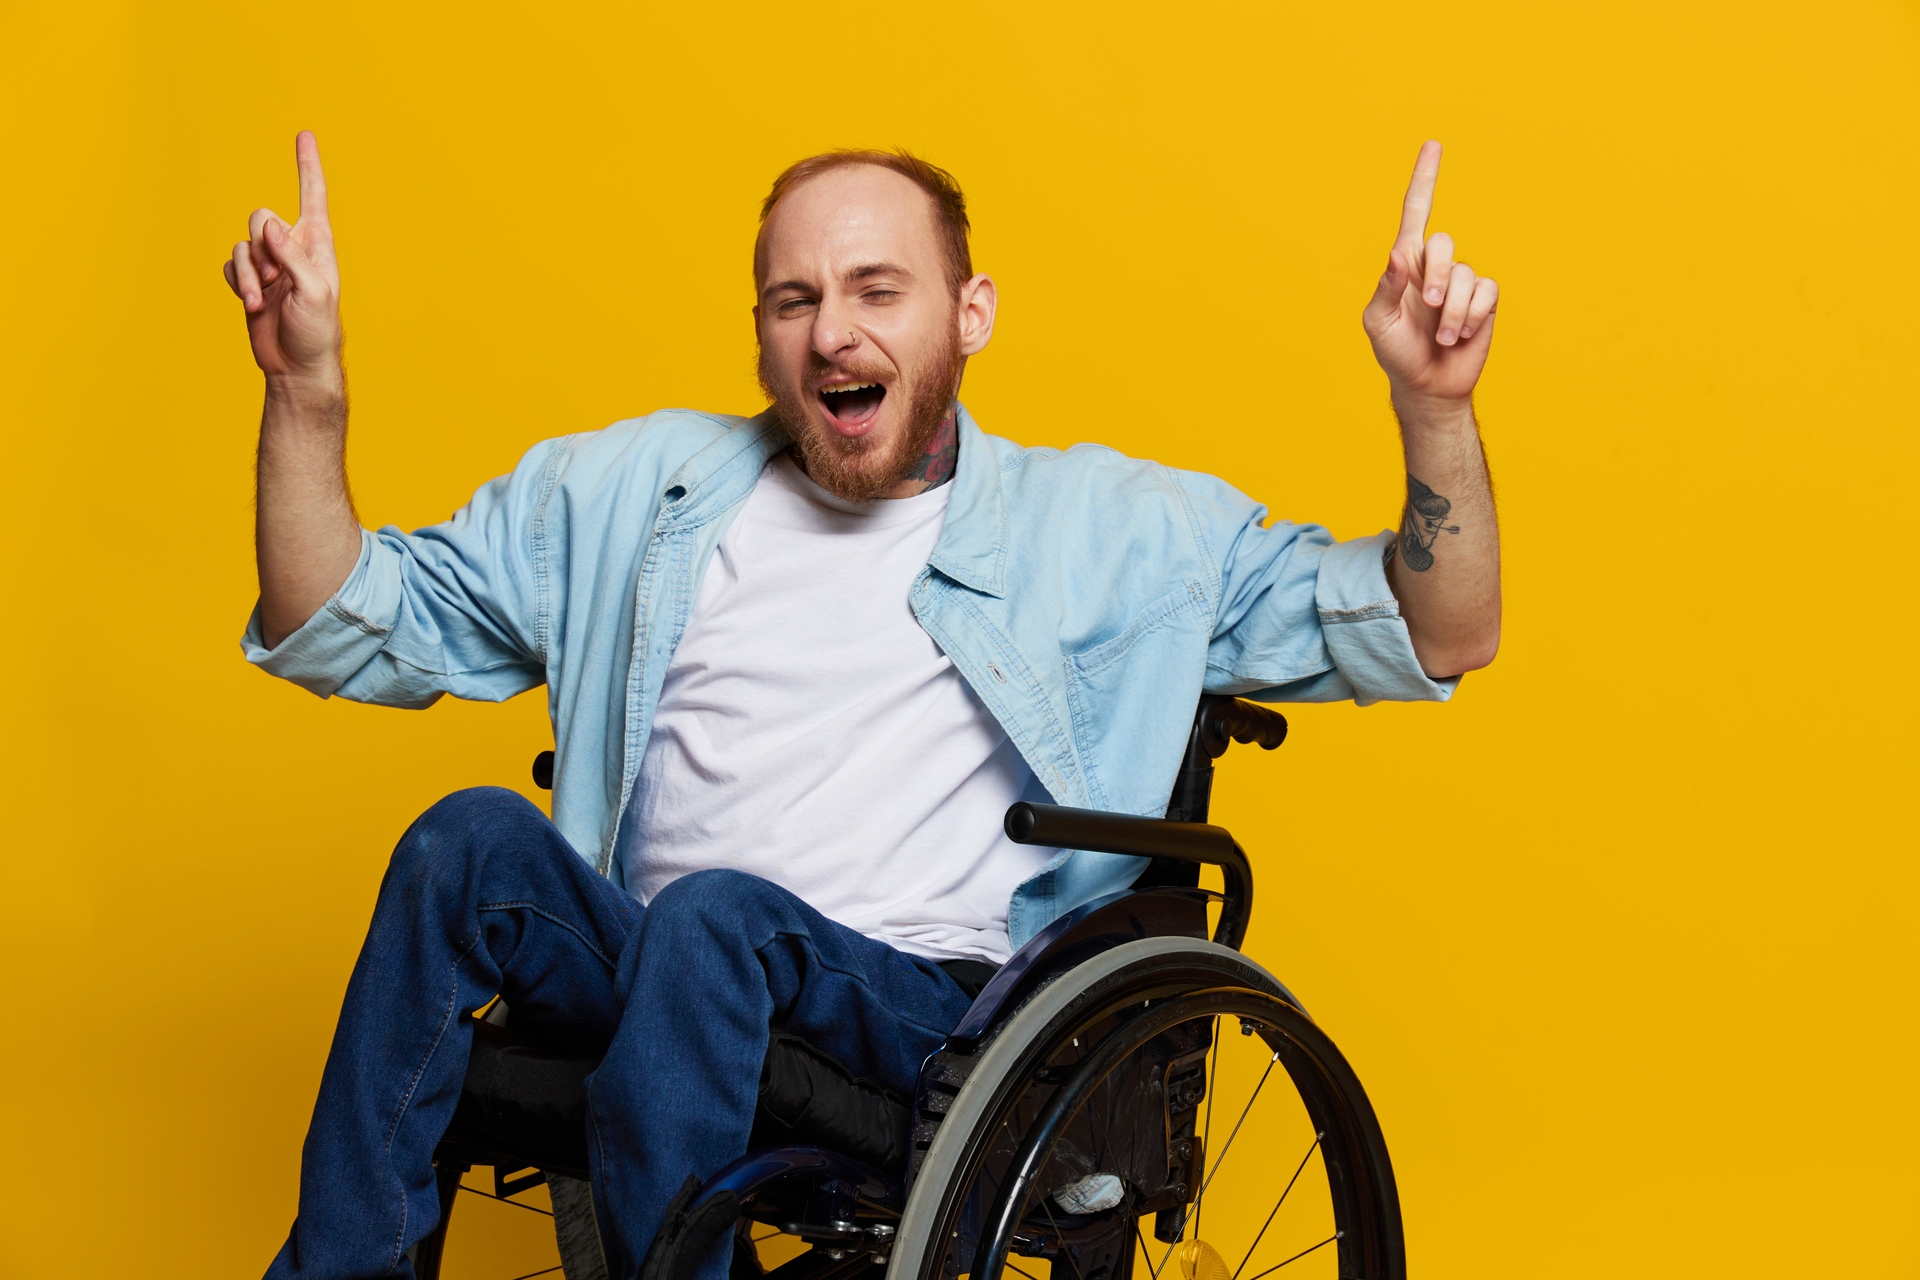 Na tym obrazku możemy zobaczyć mężczyznę z grupą inwalidzką, poruszającego się na wózku. Pomimo swojej niepełnosprawności, emanuje pewnością siebie i determinacją. Obrazek ten jest inspirującym przykładem siły ducha i pokazuje, że niepełnosprawność nie powinna definiować czyjegoś potencjału i możliwości